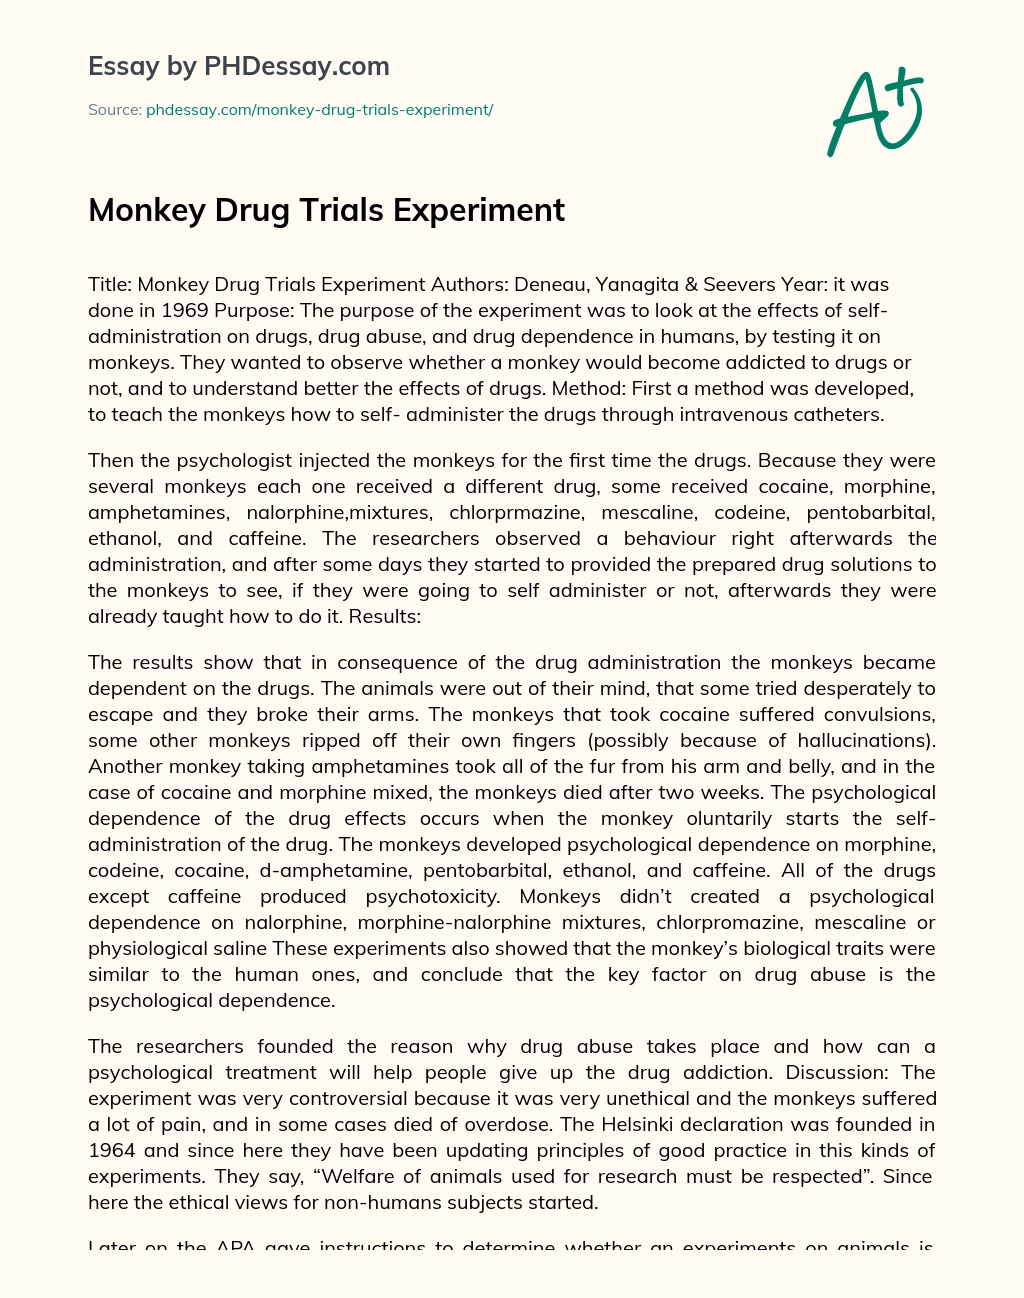 Monkey Drug Trials Experiment essay